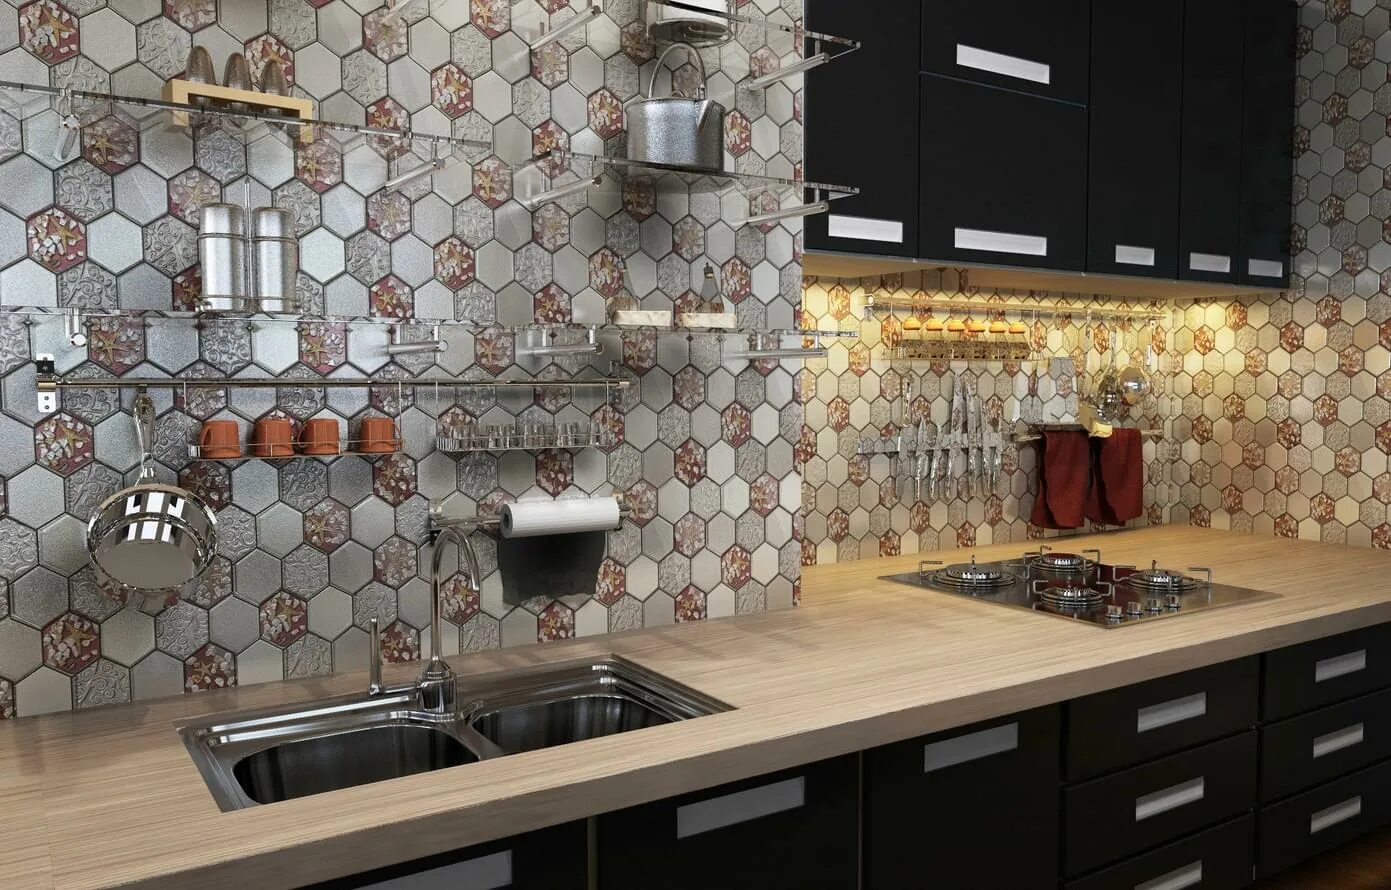 Отделка кухни плиткой. Коллекция мозаики elegans Mosaic микс. Фартук для кухни из плитки. Плитка для кухни на фартук. Керамическая мозаика для кухни.